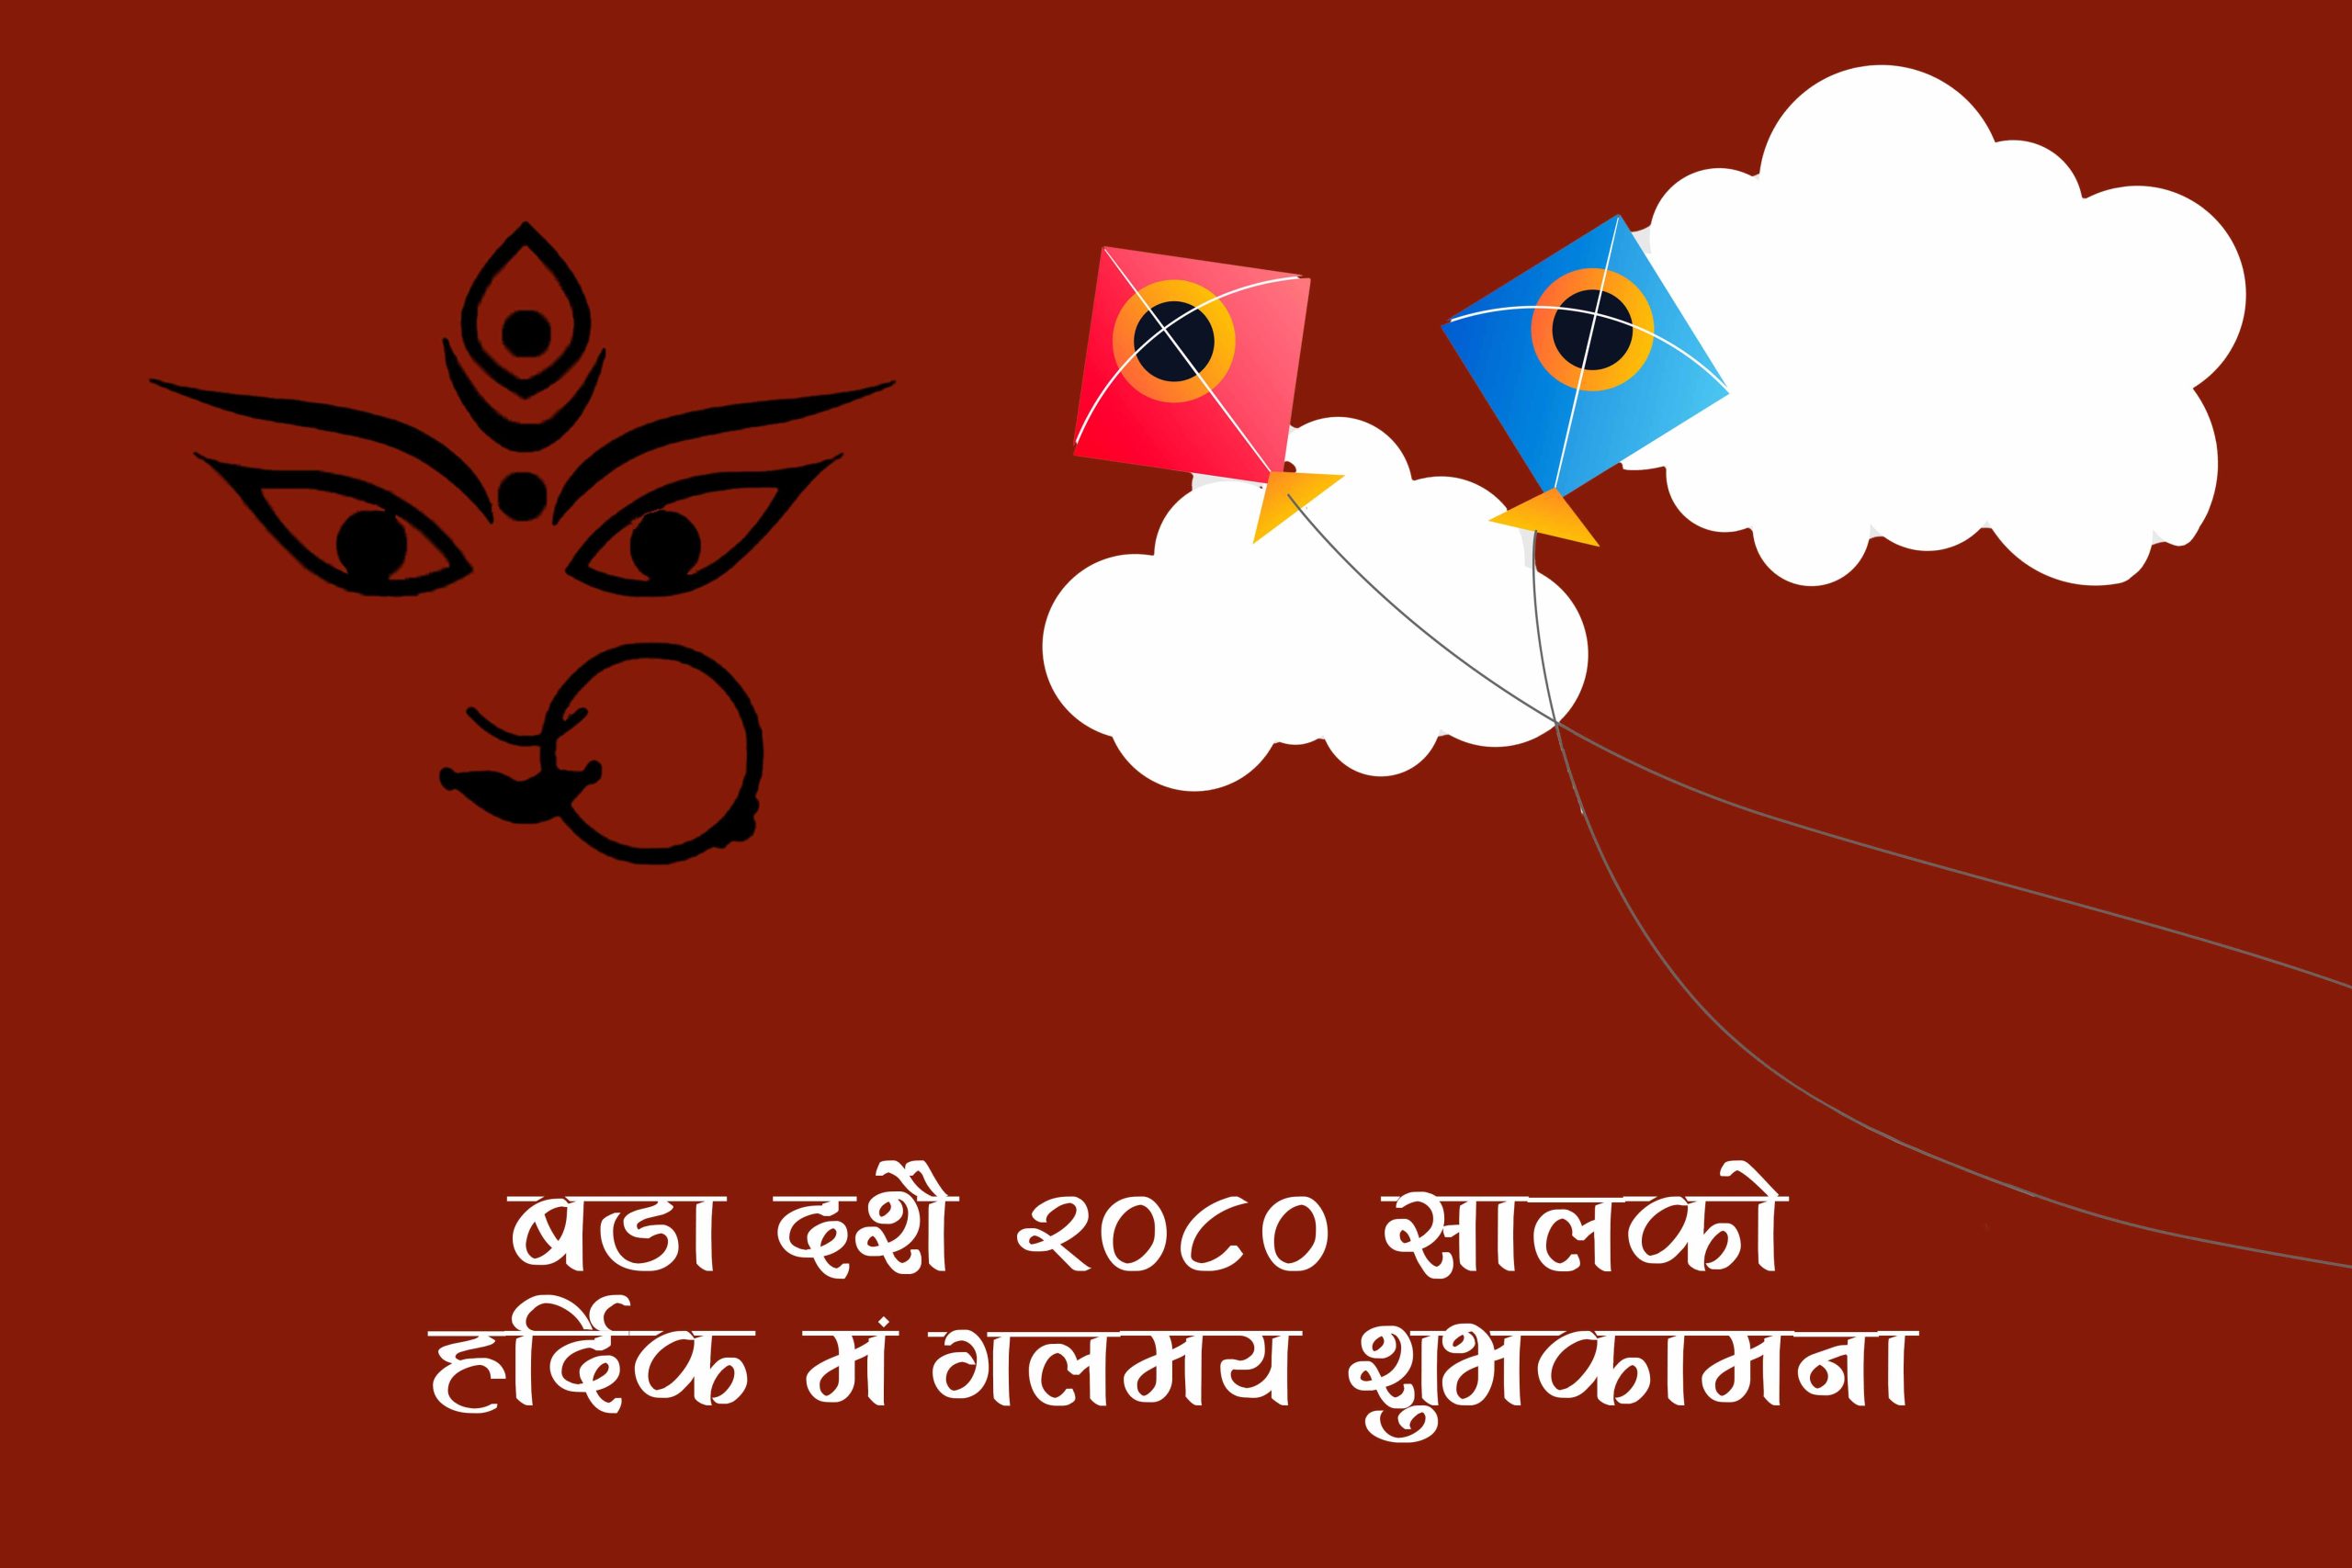 Happy Dashain Wishes 2080